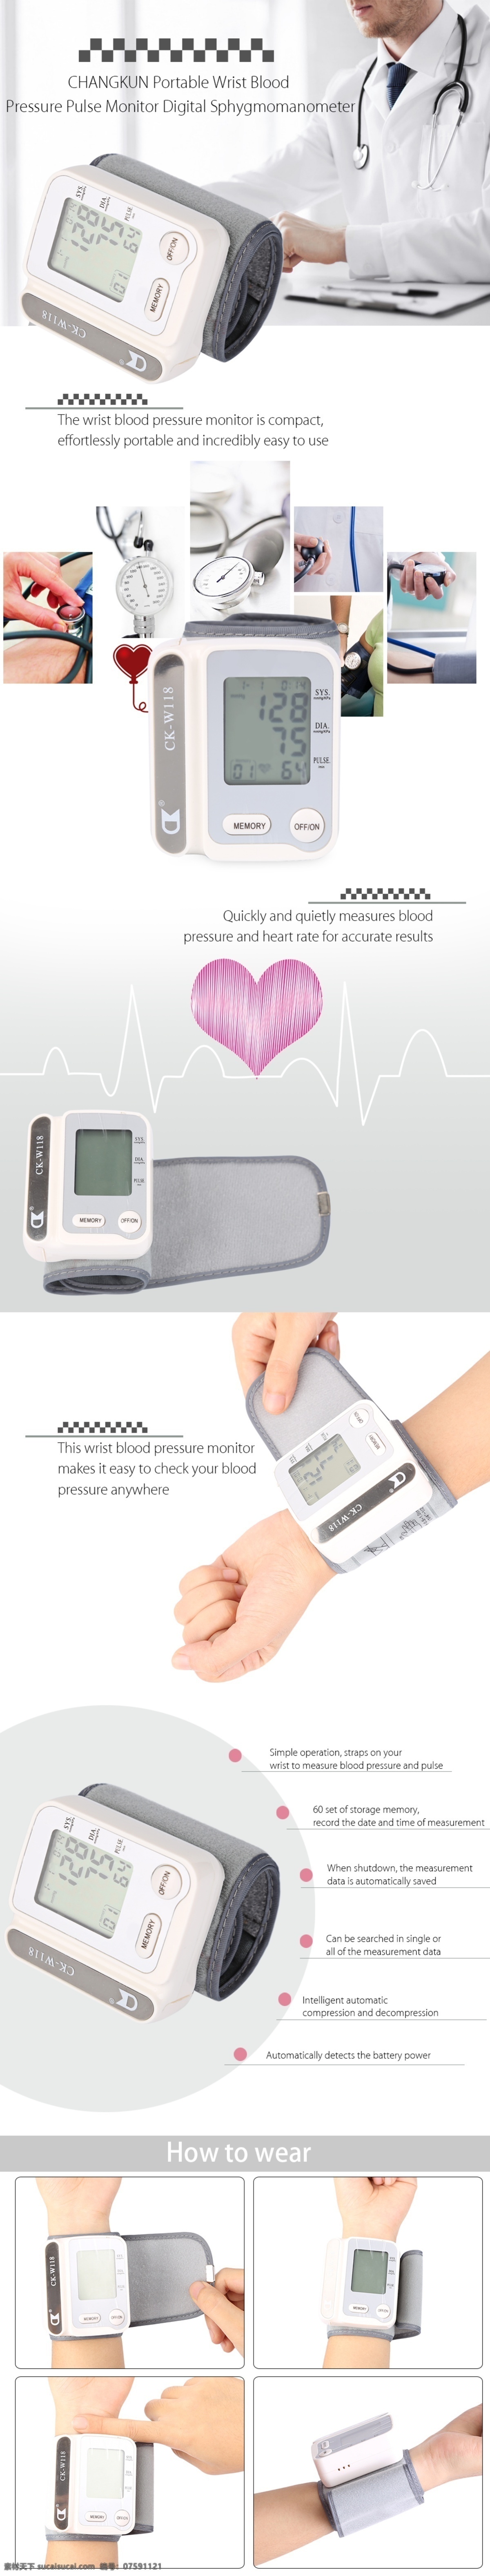 血压仪详情页 淘宝 宝贝 描述 白色 血压计 血压仪 血压监测